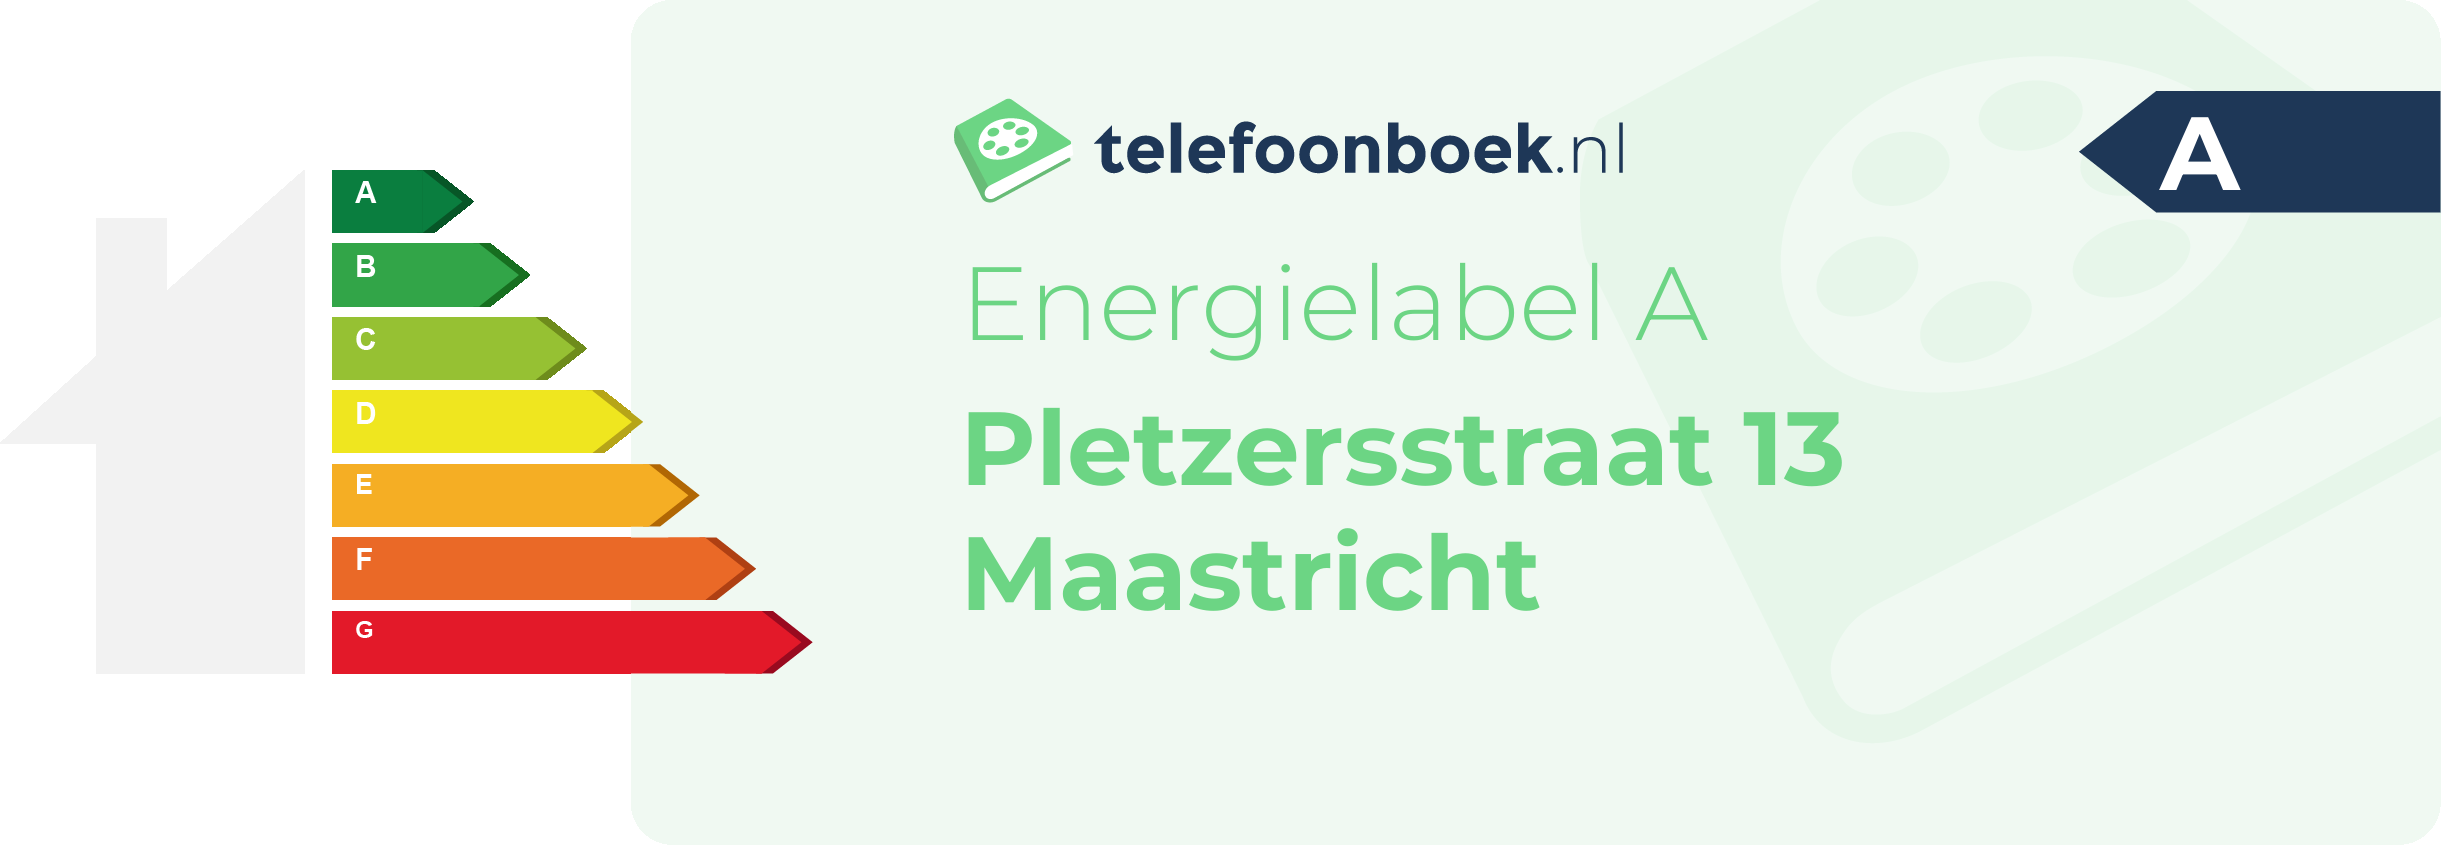 Energielabel Pletzersstraat 13 Maastricht